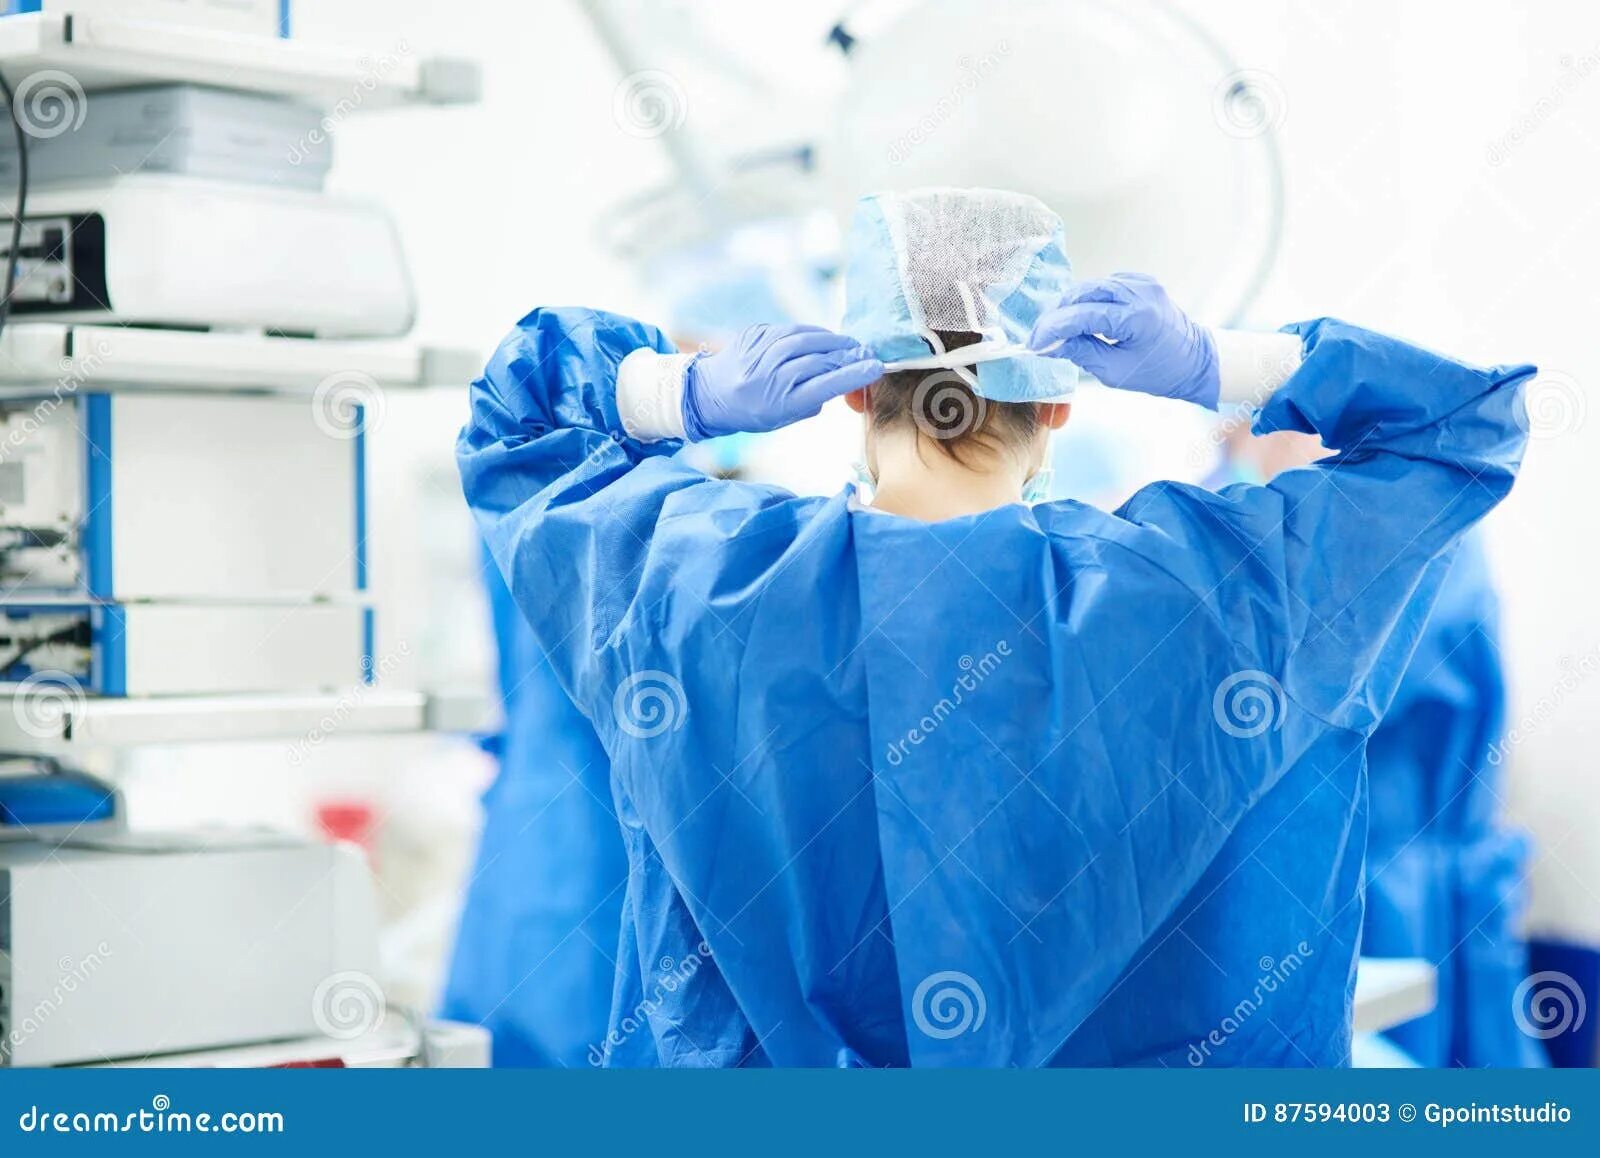 Руки доктора перед операцией. Подготовка рук к операции картинки. Подготовка рук к операции